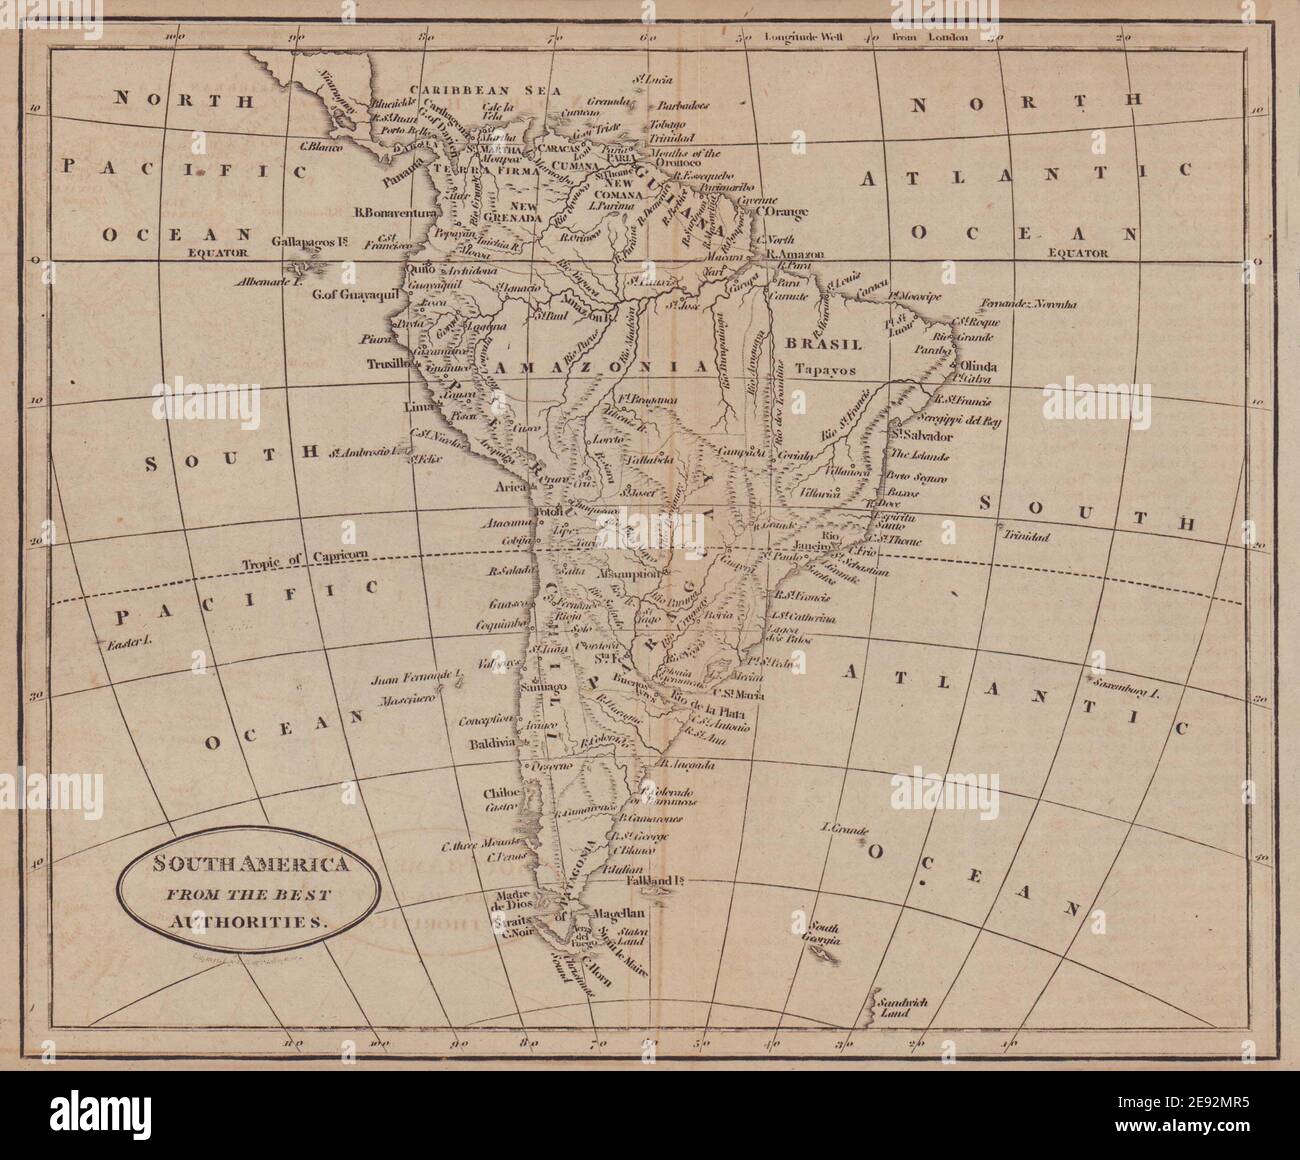 Südamerika von den besten Autoritäten von Richard Brookes 1812 Alte Karte Stockfoto